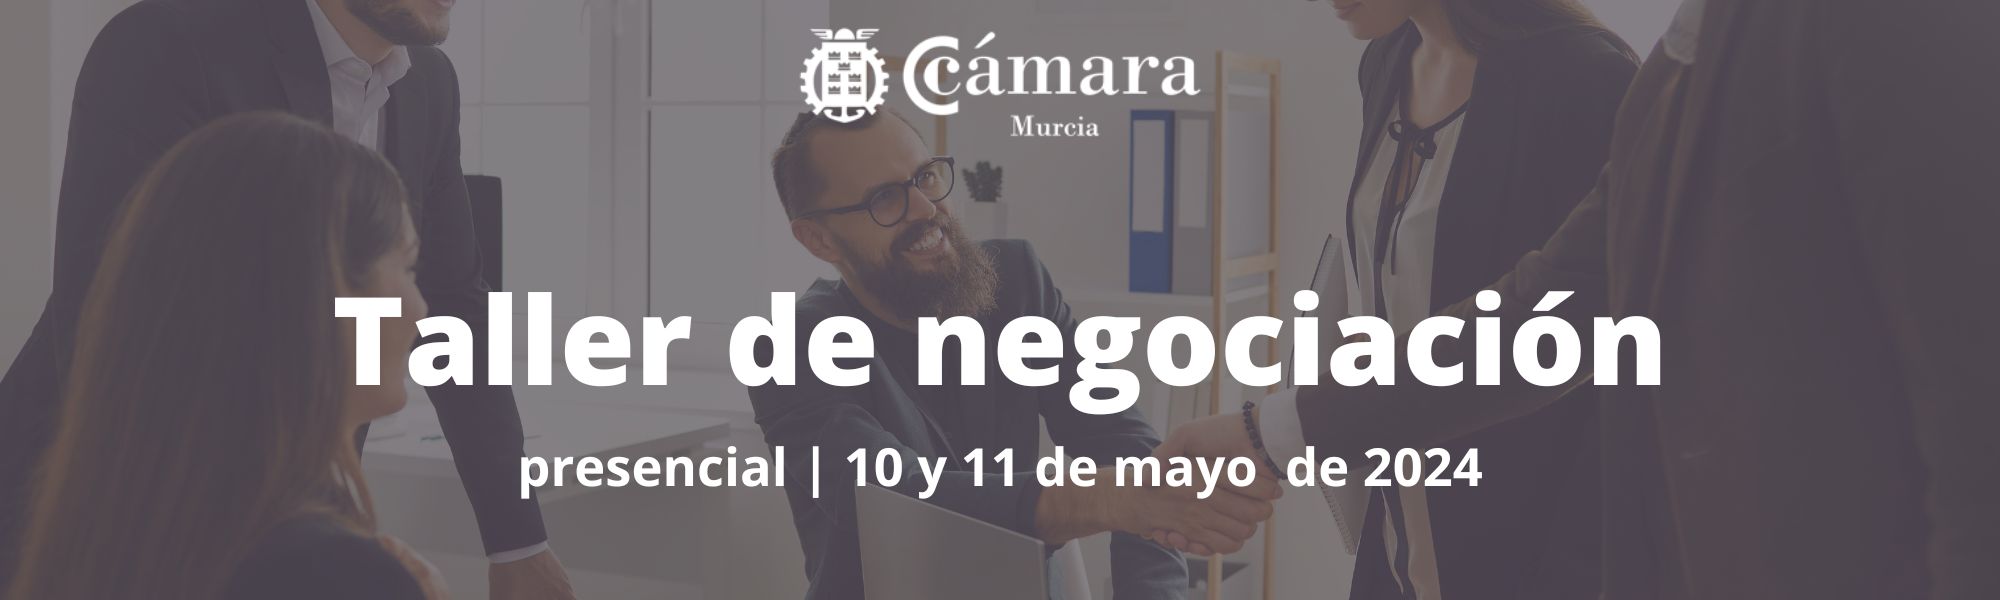 Taller de negociación | Cámara de Comercio de Murcia | Formación Ejecutiva